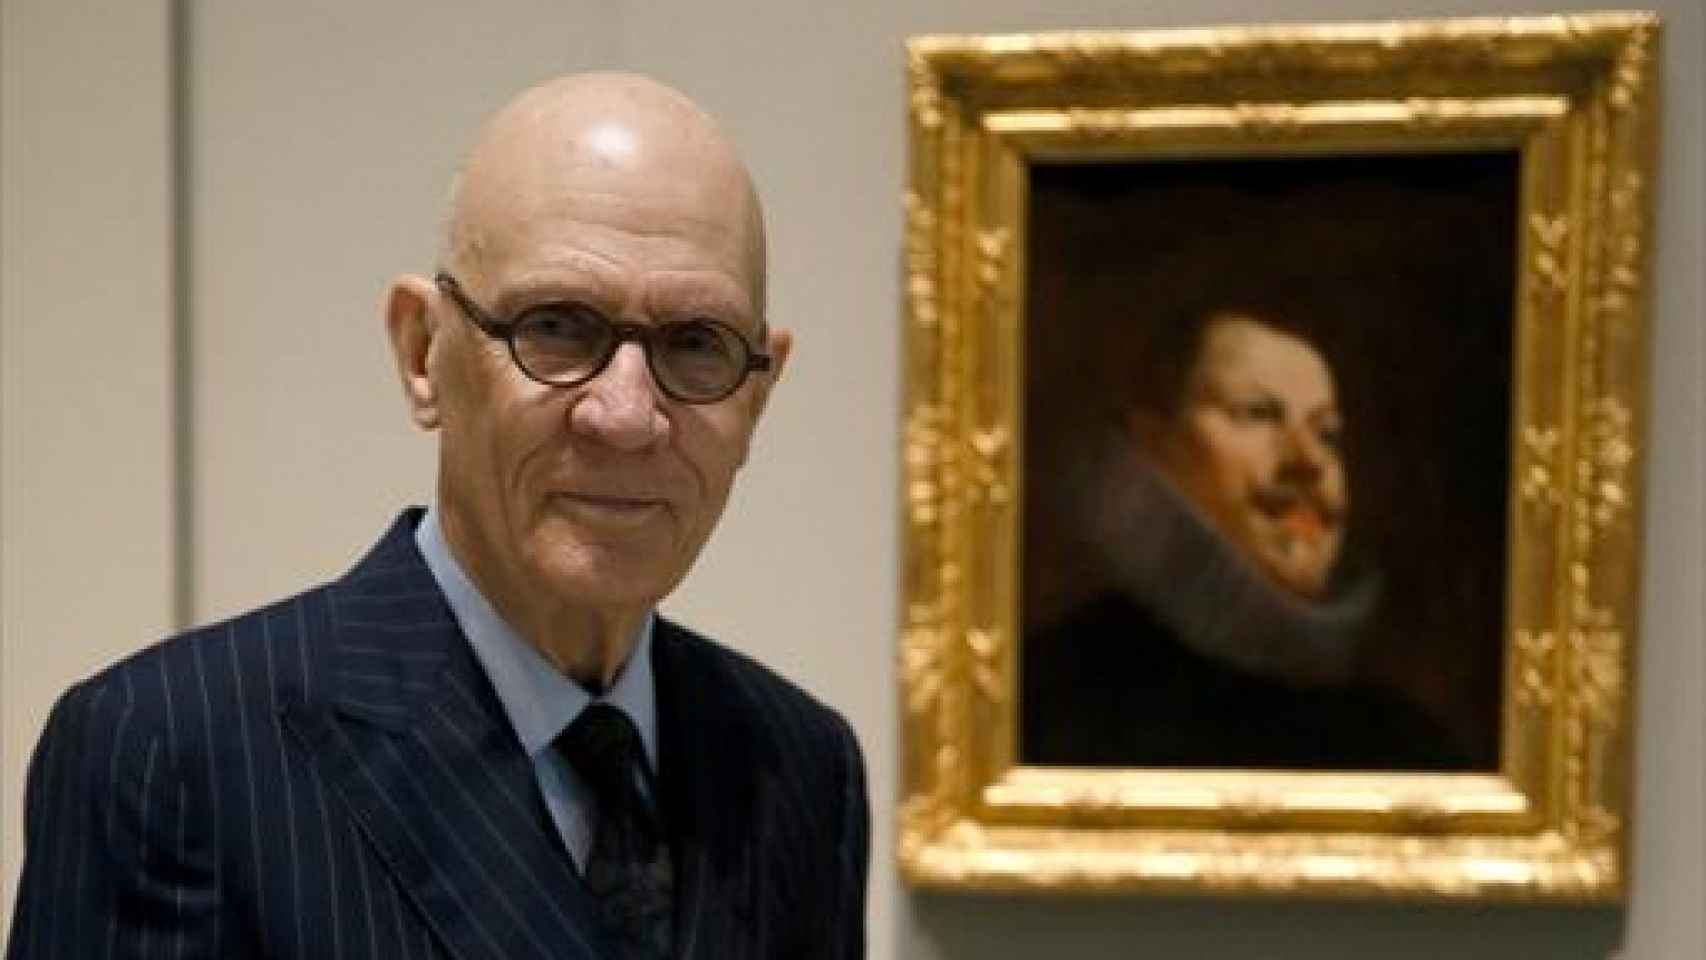 Image: Muere el historiador del arte William B. Jordan, donante de un Velázquez al Prado